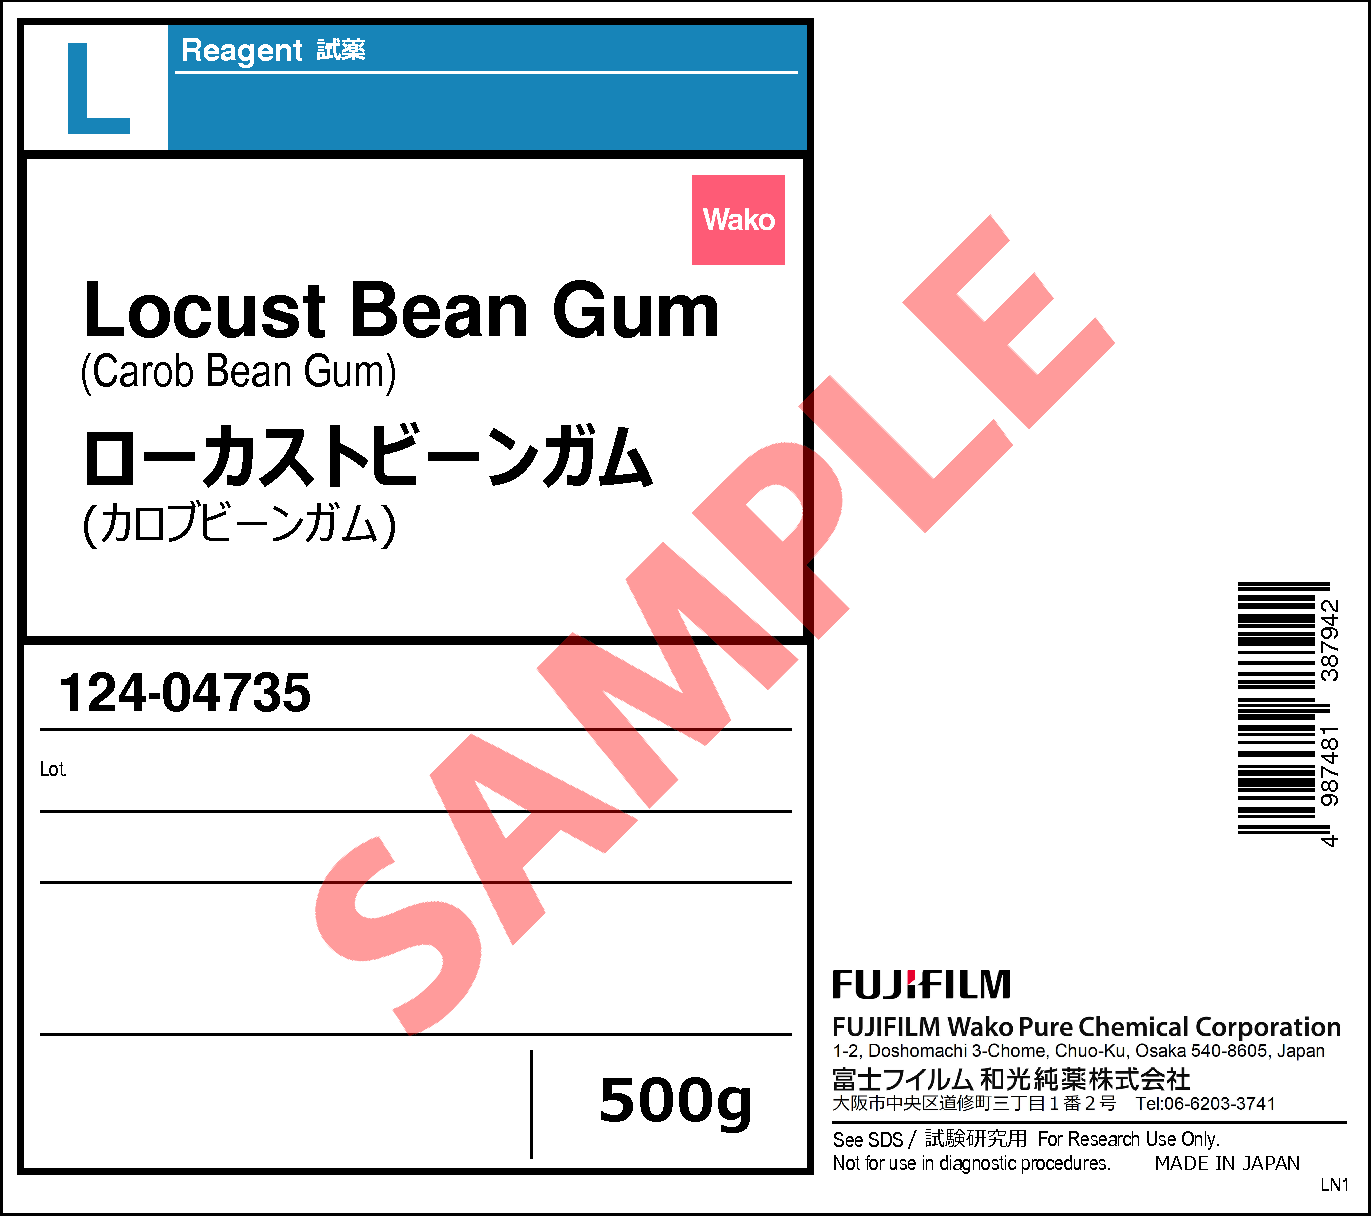 9000-40-2・ローカストビーンガム・Locust Bean Gum・120-04732・124 